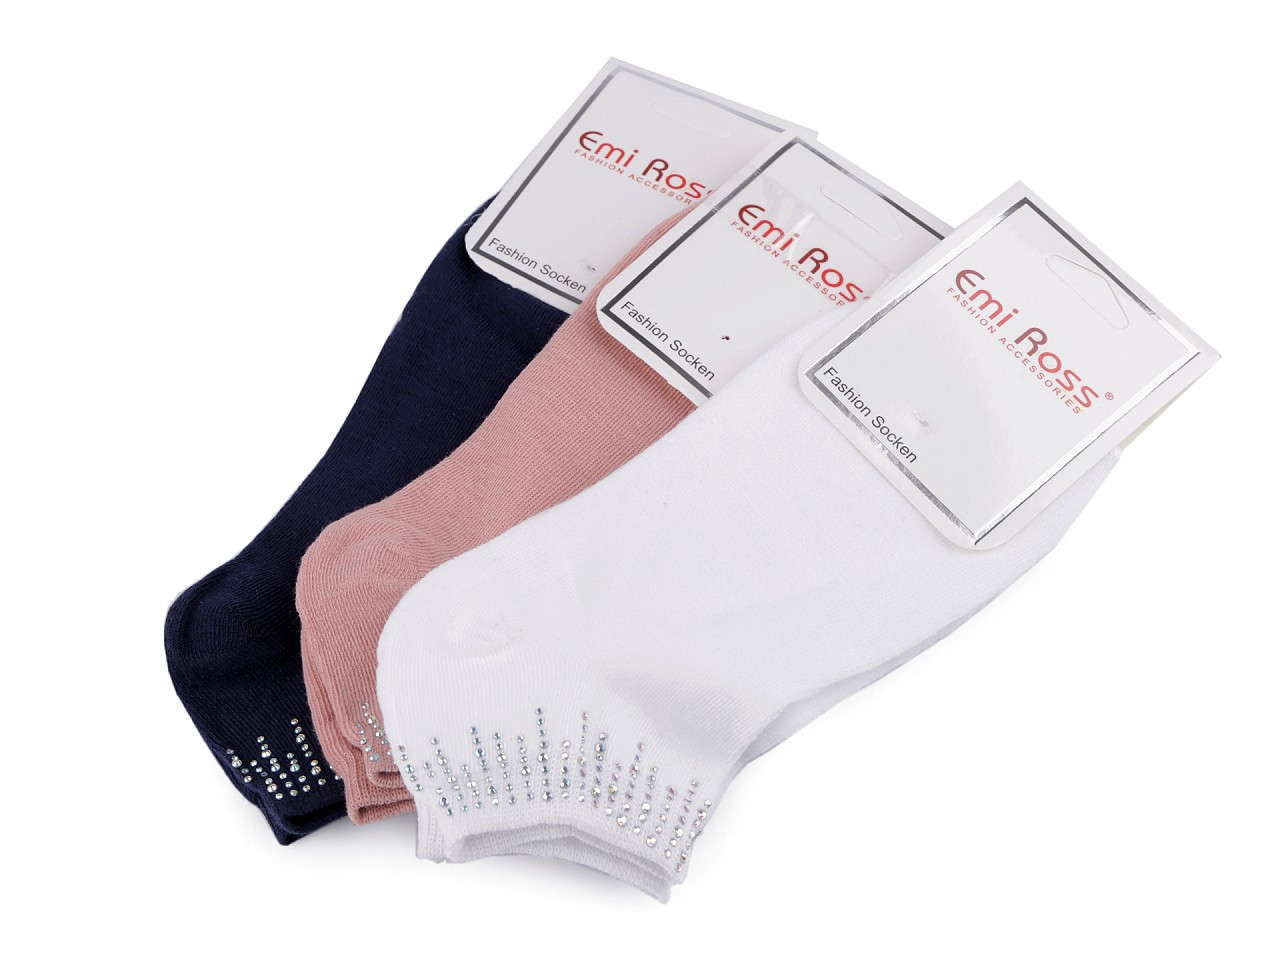 Dámské bavlněné ponožky kotníkové s kamínky Emi Ross, barva 25 (vel. 35-38) mix